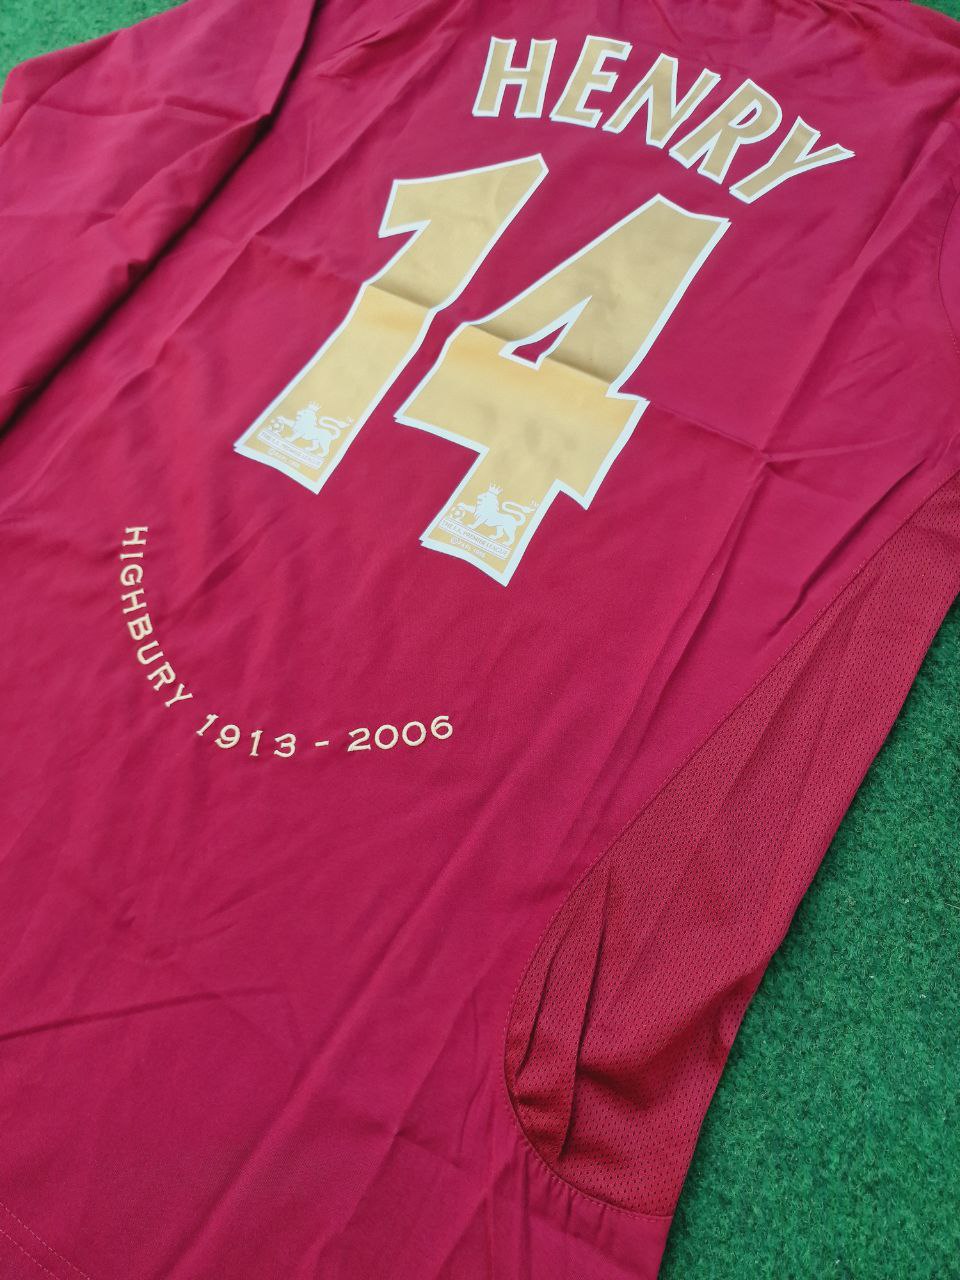 Arsenal Retro 2005 Bordo Uzun Kollu Forma